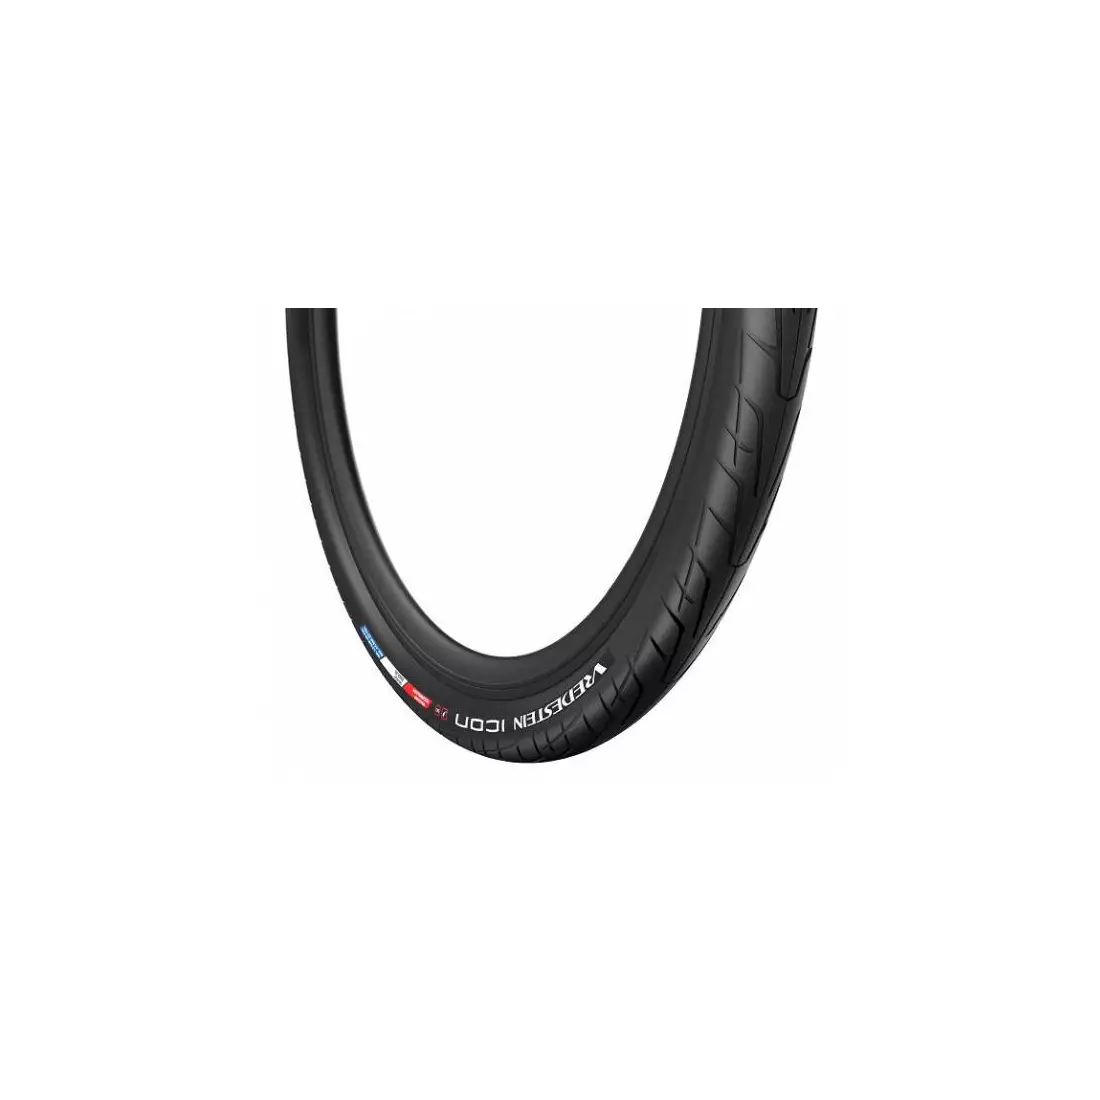 VREDESTEIN trekking tyre e-bike icon 26x2.20 (55-599) wire anti-pitting insert black VRD-26682